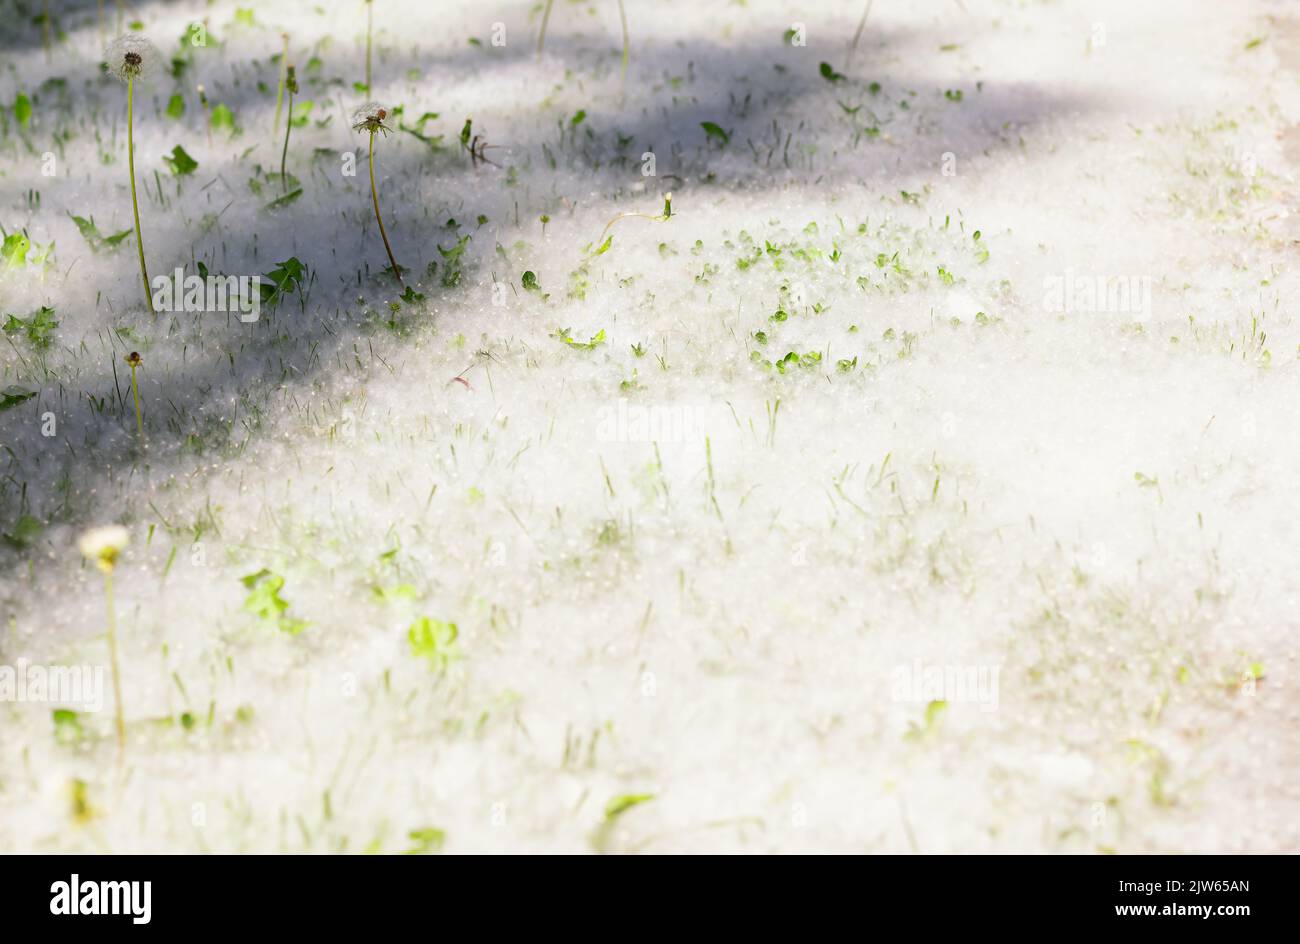 Hierba verde cubierta de pelusas de álamo, vista lateral del camino en la hierba en los rayos de la luz del sol. Enfoque selectivo. Advertencia Alérgenos fuertes. Concepto de riesgo para la salud. P Foto de stock